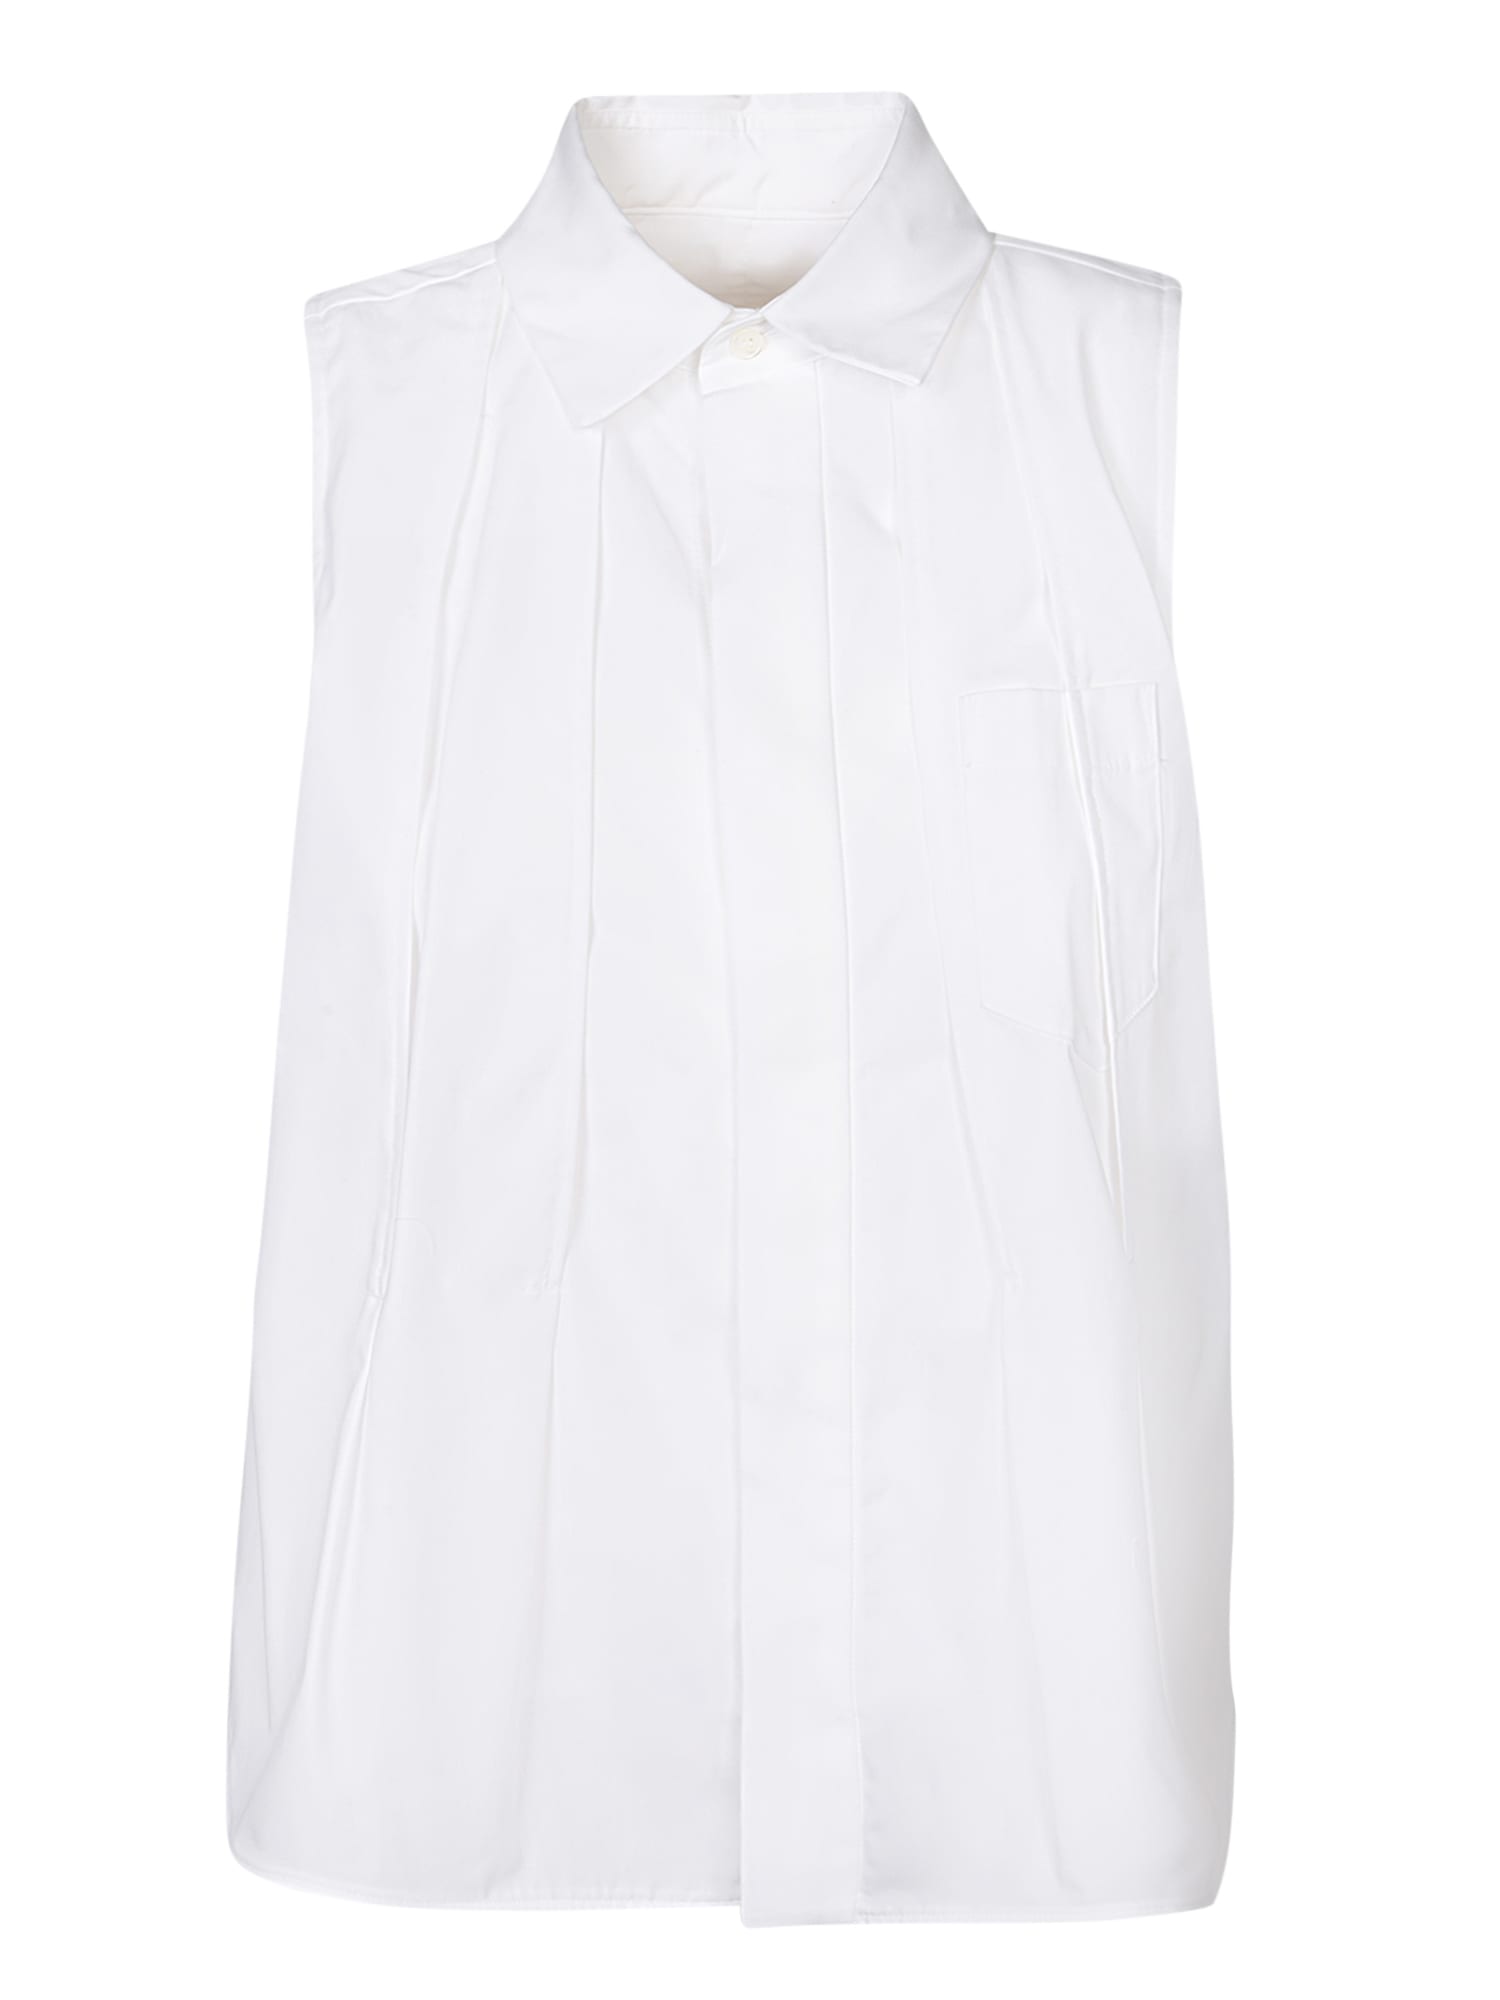 Popeline White Shirt